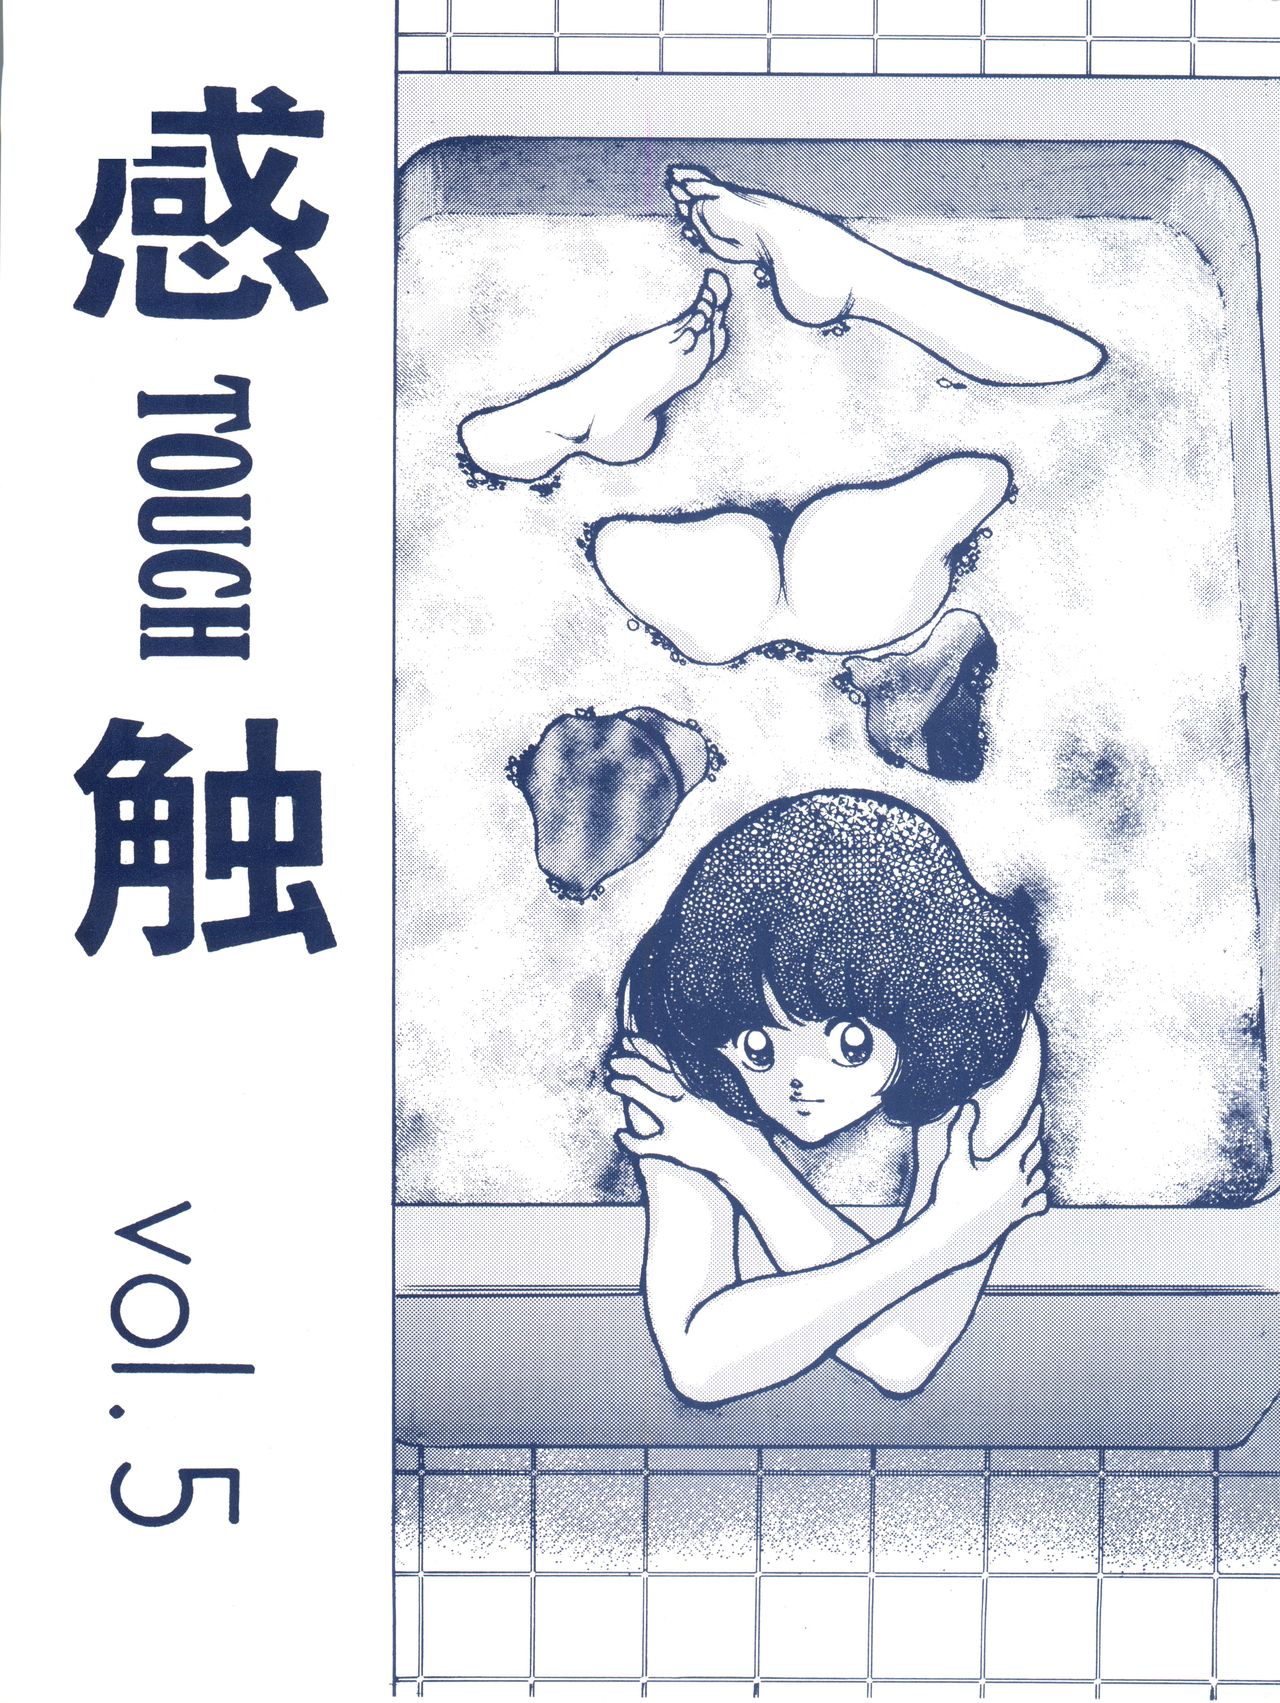 [STUDIO SHARAKU (Sharaku Seiya)] Kanshoku -TOUCH- vol.5 (Miyuki) [2000-08-13] page 1 full